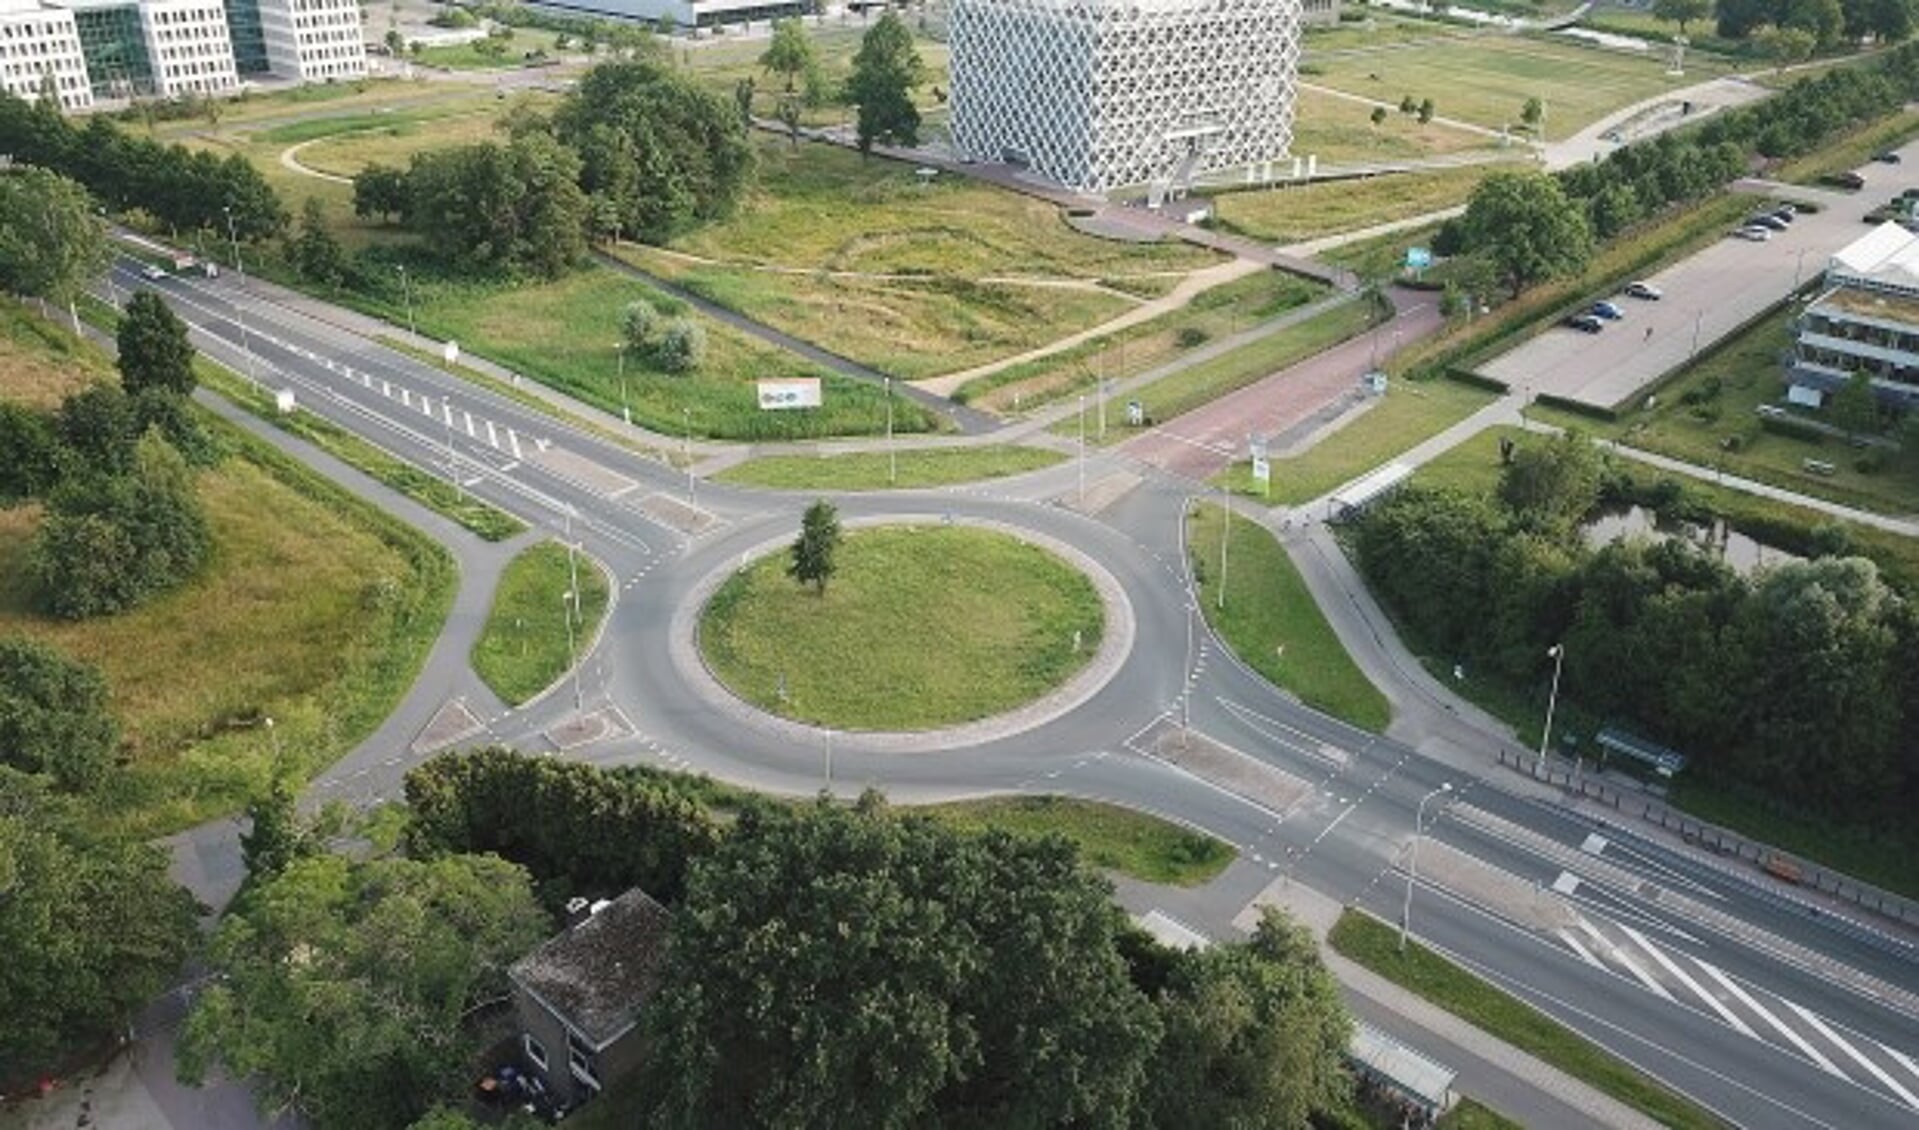 De rotonde op de Mansholtlaan bij de Campus is een van de grote knelpunten in de bereikbaarheid van Wageningen. (foto: Antonio Mulder)